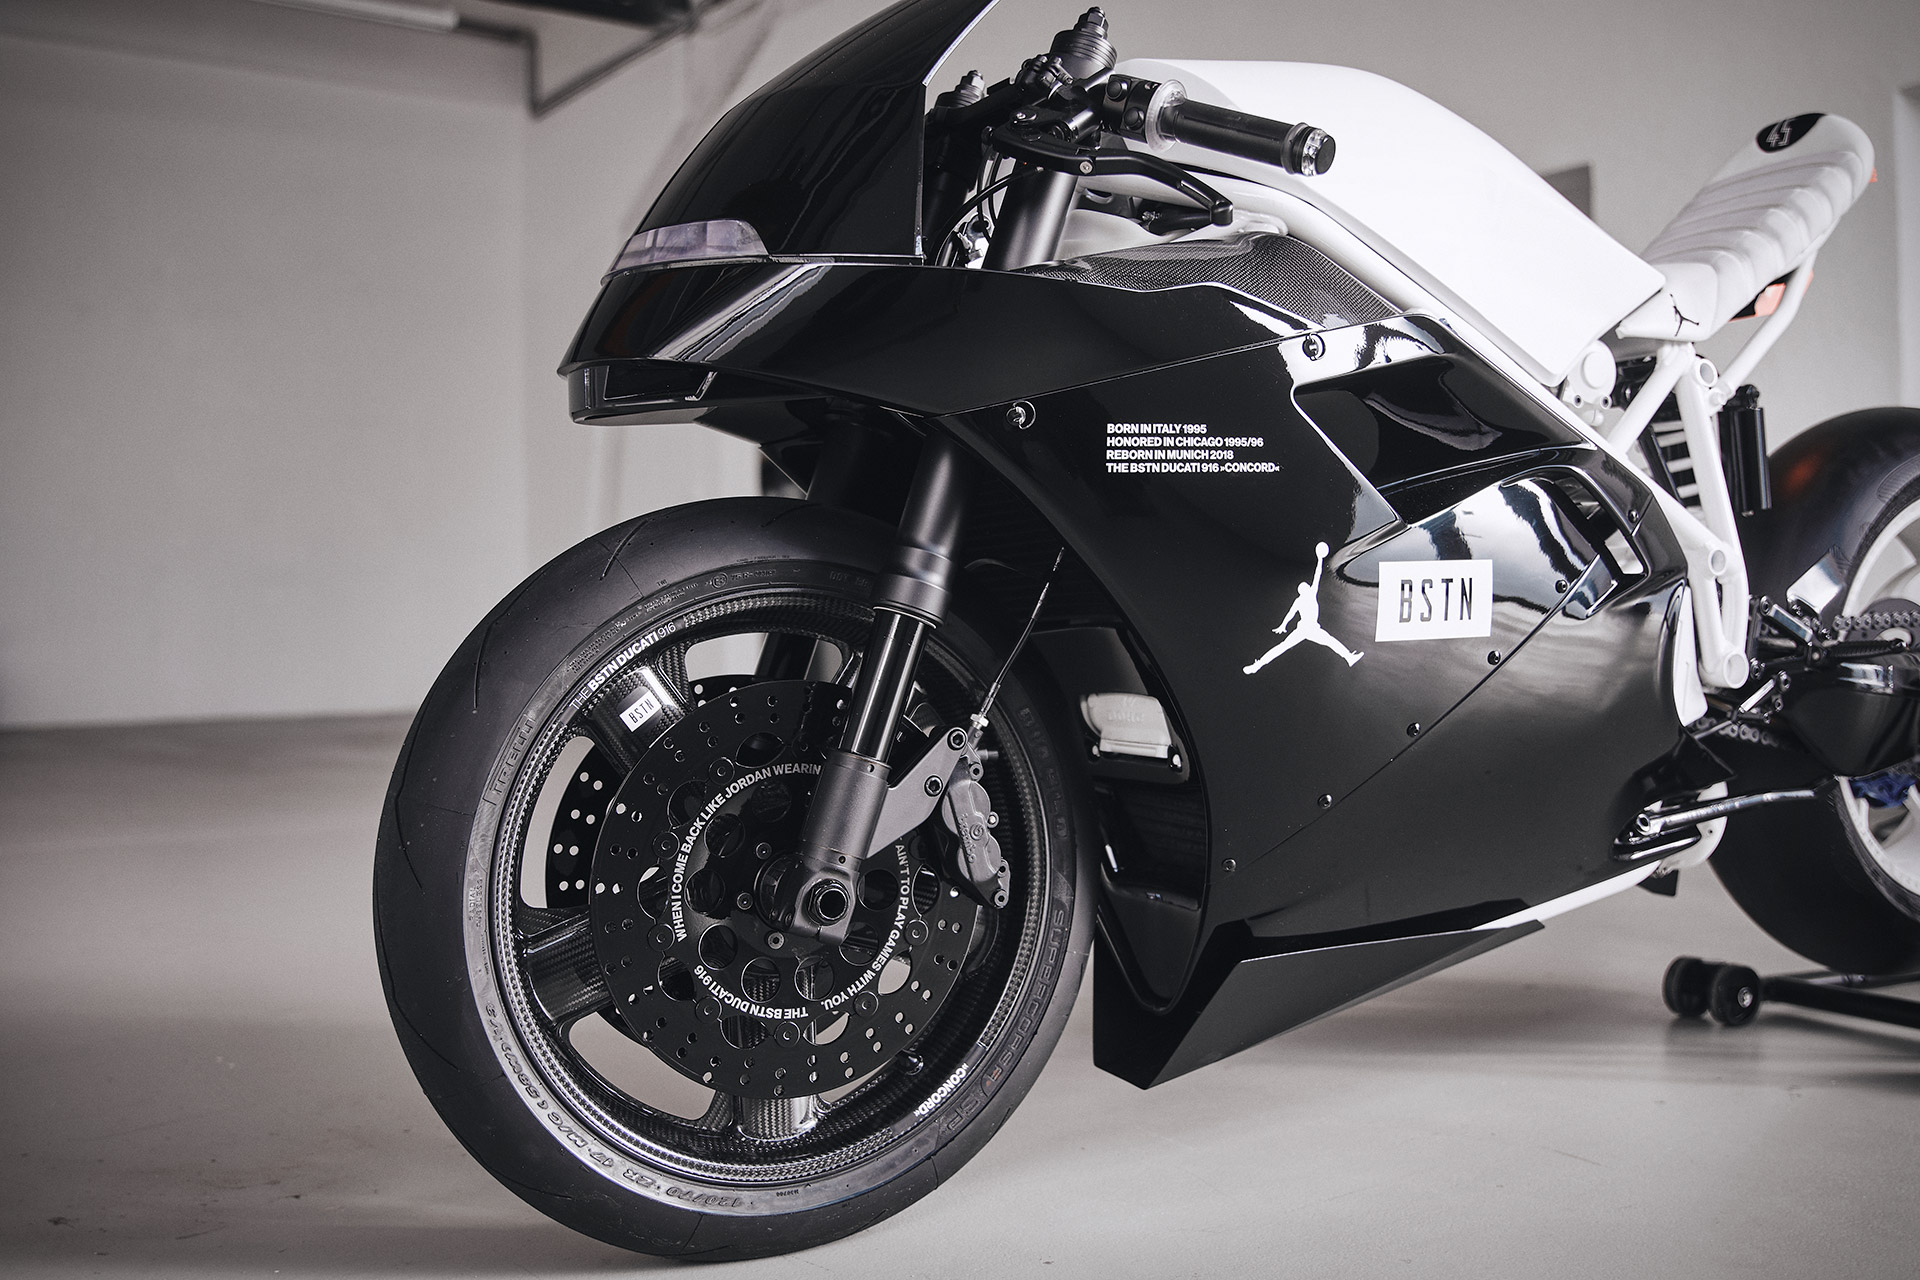 Una Ducati 916 que le rinde homenaje a zapatillas – Gente de Moto